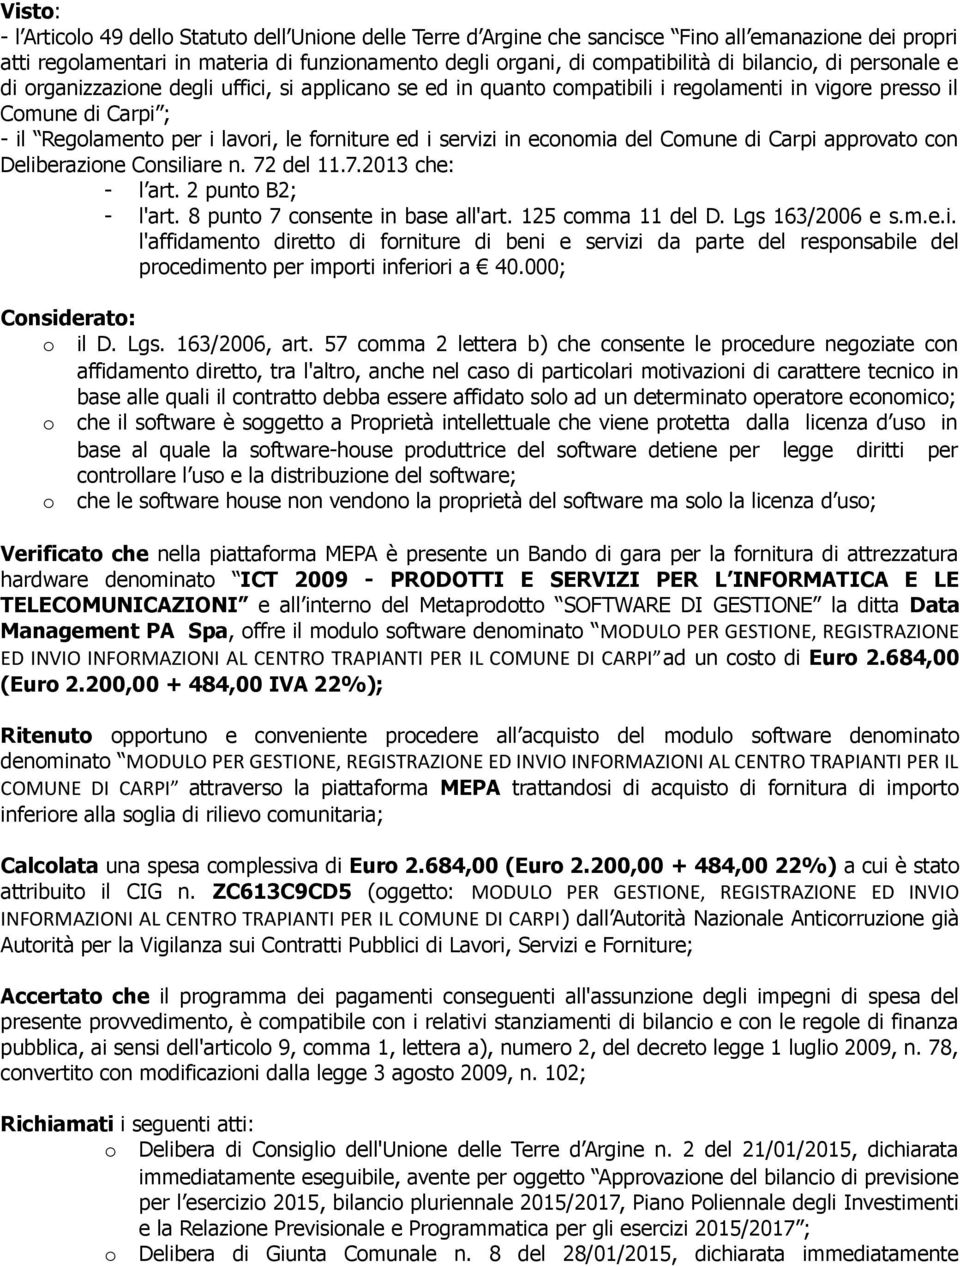 servizi in economia del Comune di Carpi approvato con Deliberazione Consiliare n. 72 del 11.7.2013 che: - l art. 2 punto B2; - l'art. 8 punto 7 consente in base all'art. 125 comma 11 del D.